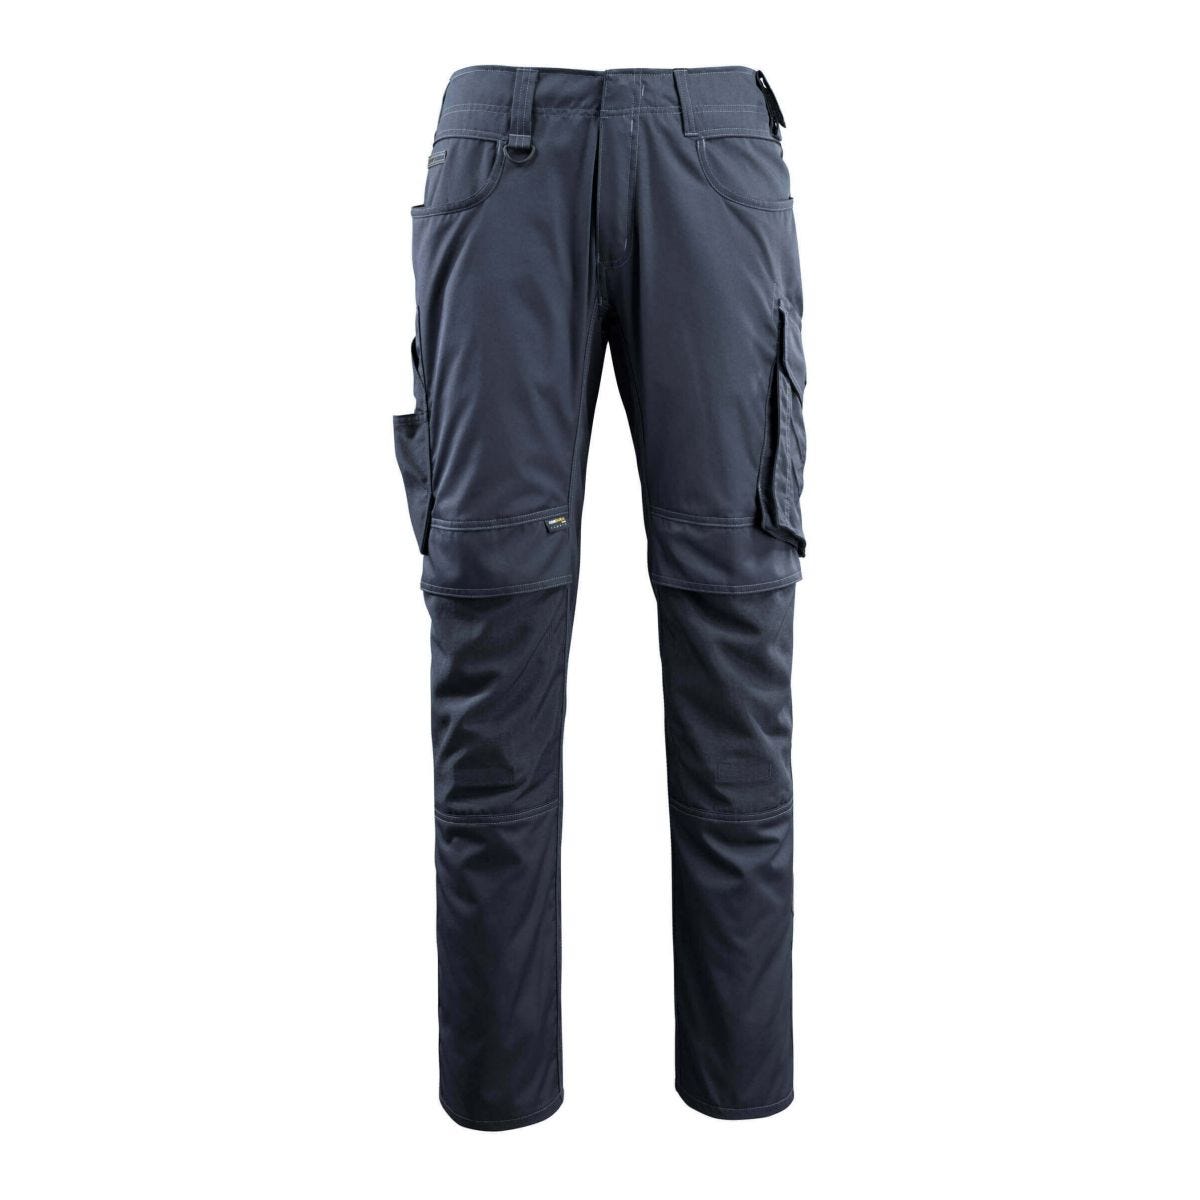 Pantalon avec poches genouillères MANNHEIM Marine foncé - Mascot - Taille W34.5/L32 0